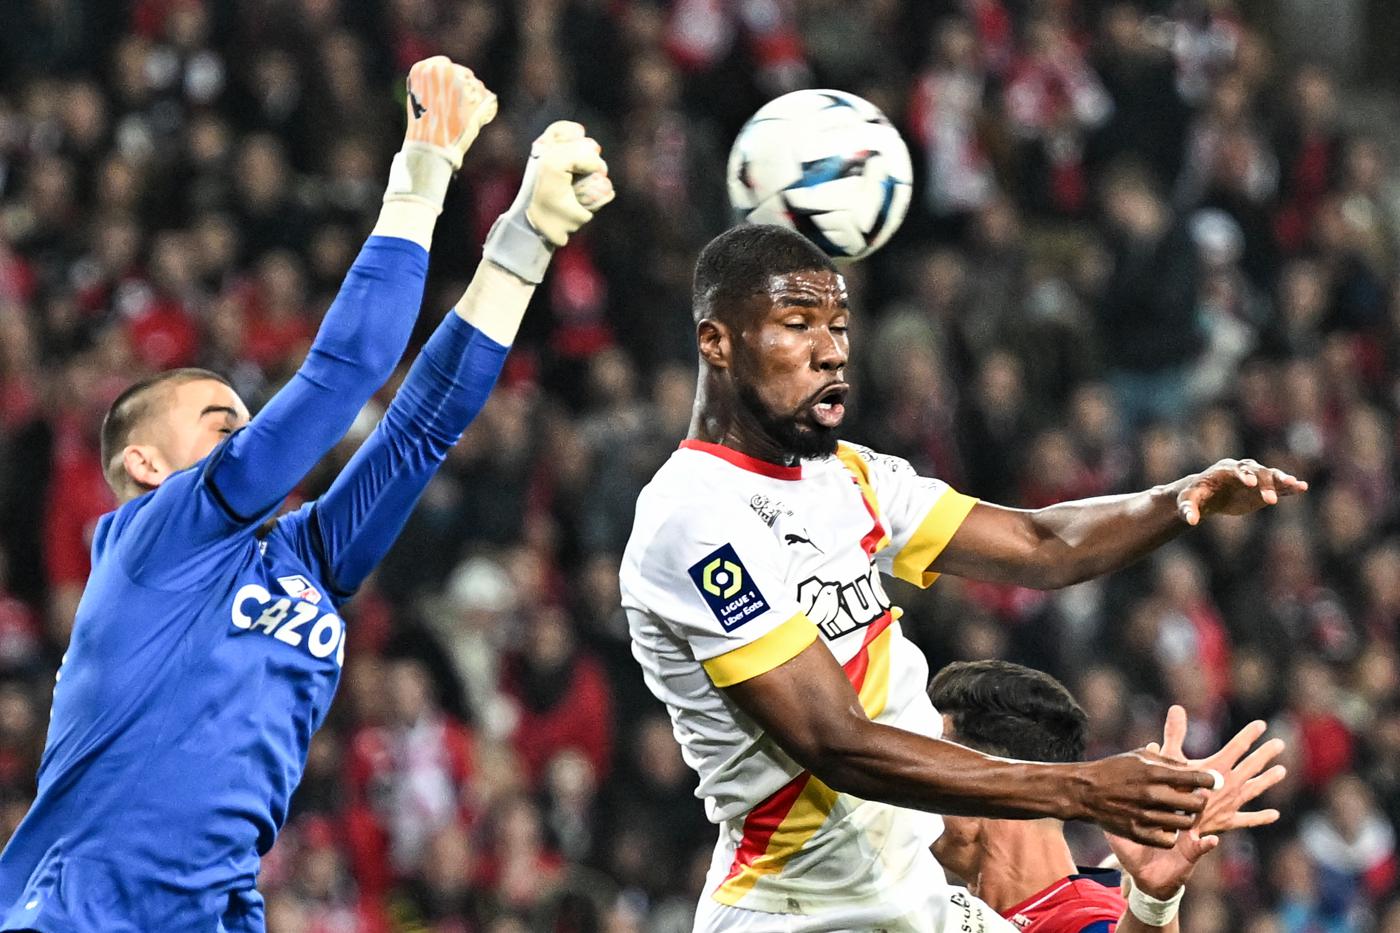 Lance v Lille - 1-1. Mistrzostwa Francji, runda 26. Przegląd meczu, statystyki.